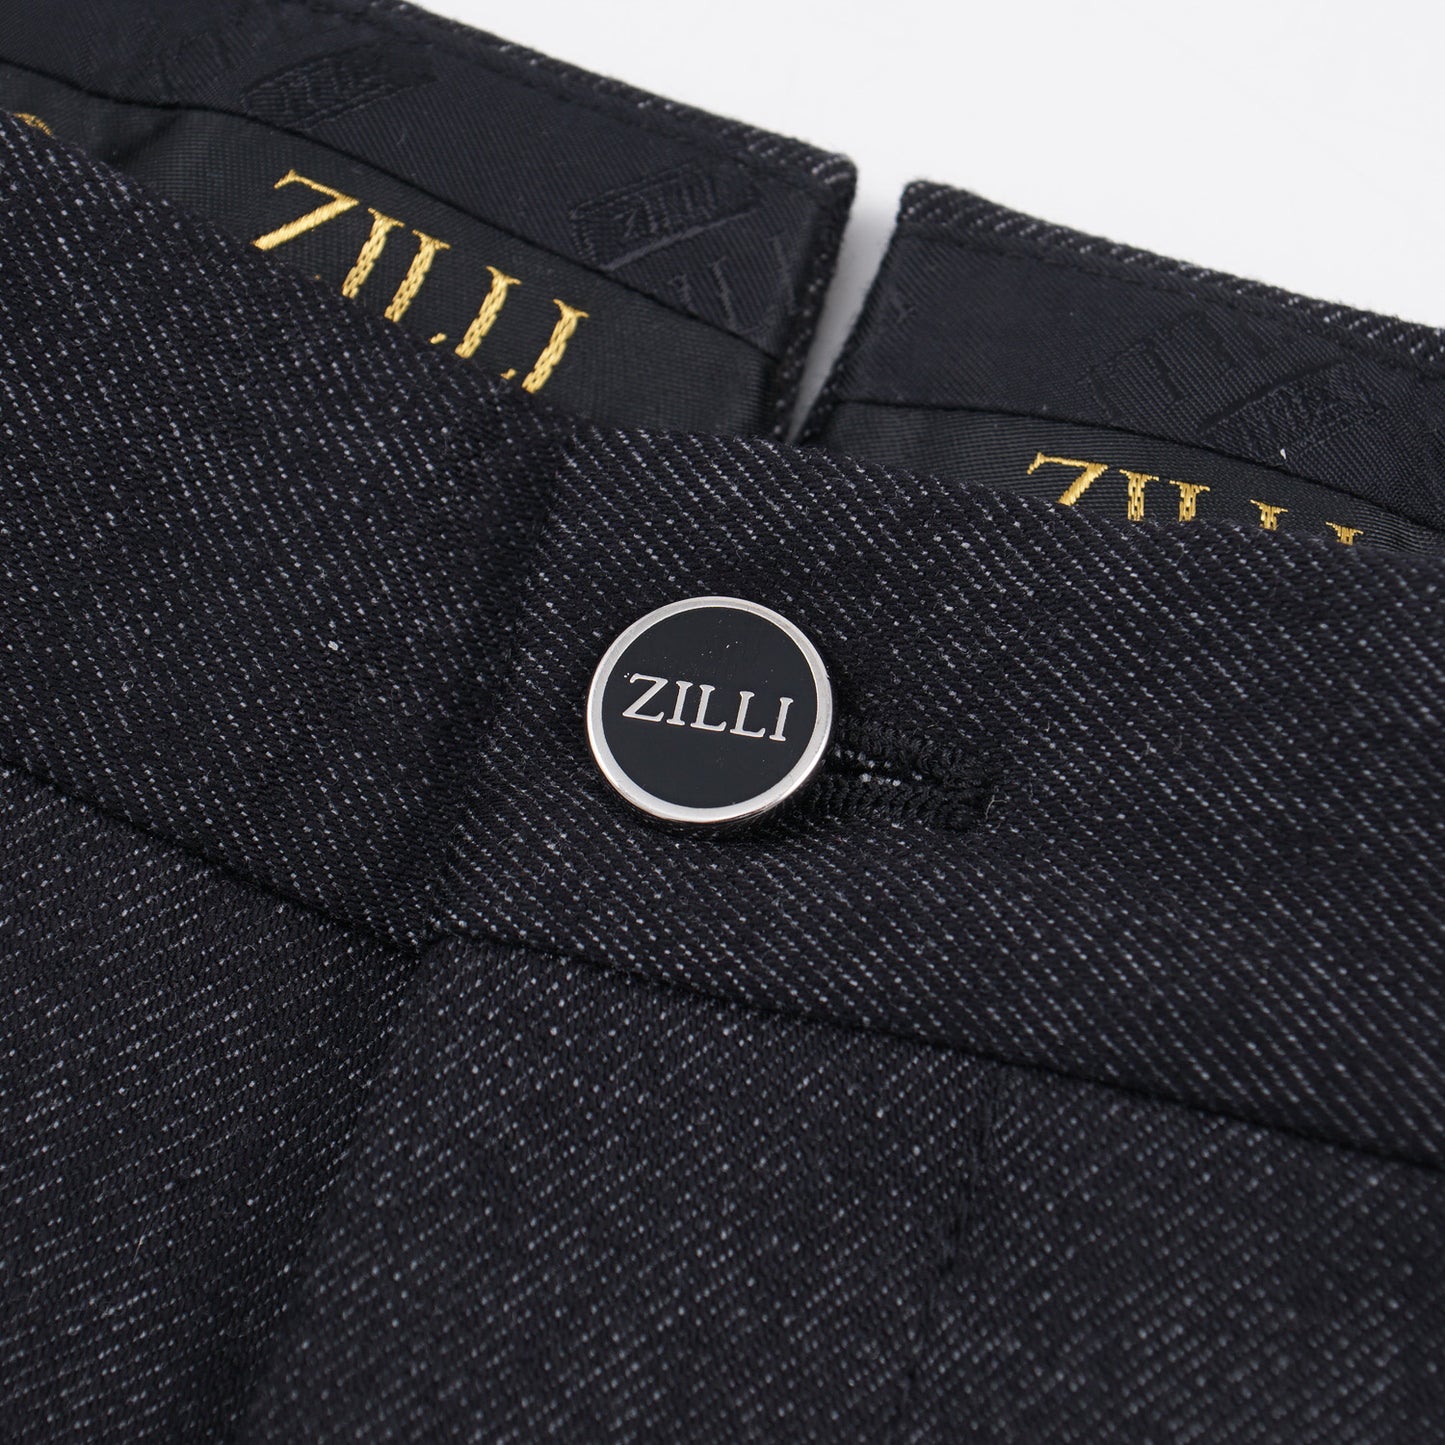 Zilli 'Denim' Twill Wool Pants - Top Shelf Apparel